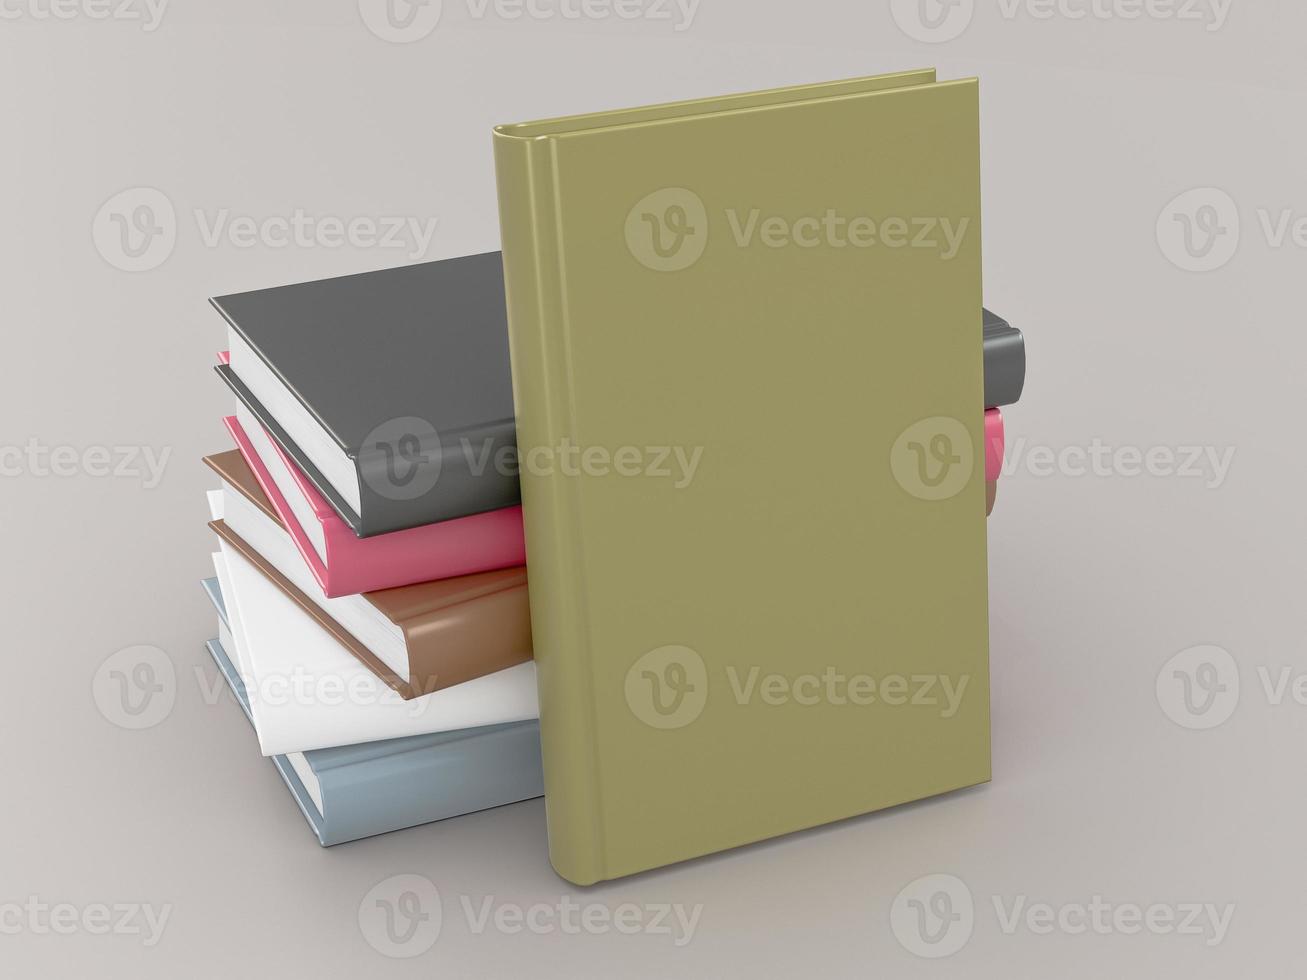 Plantilla de maqueta de libro de color vacío sobre fondo gris foto